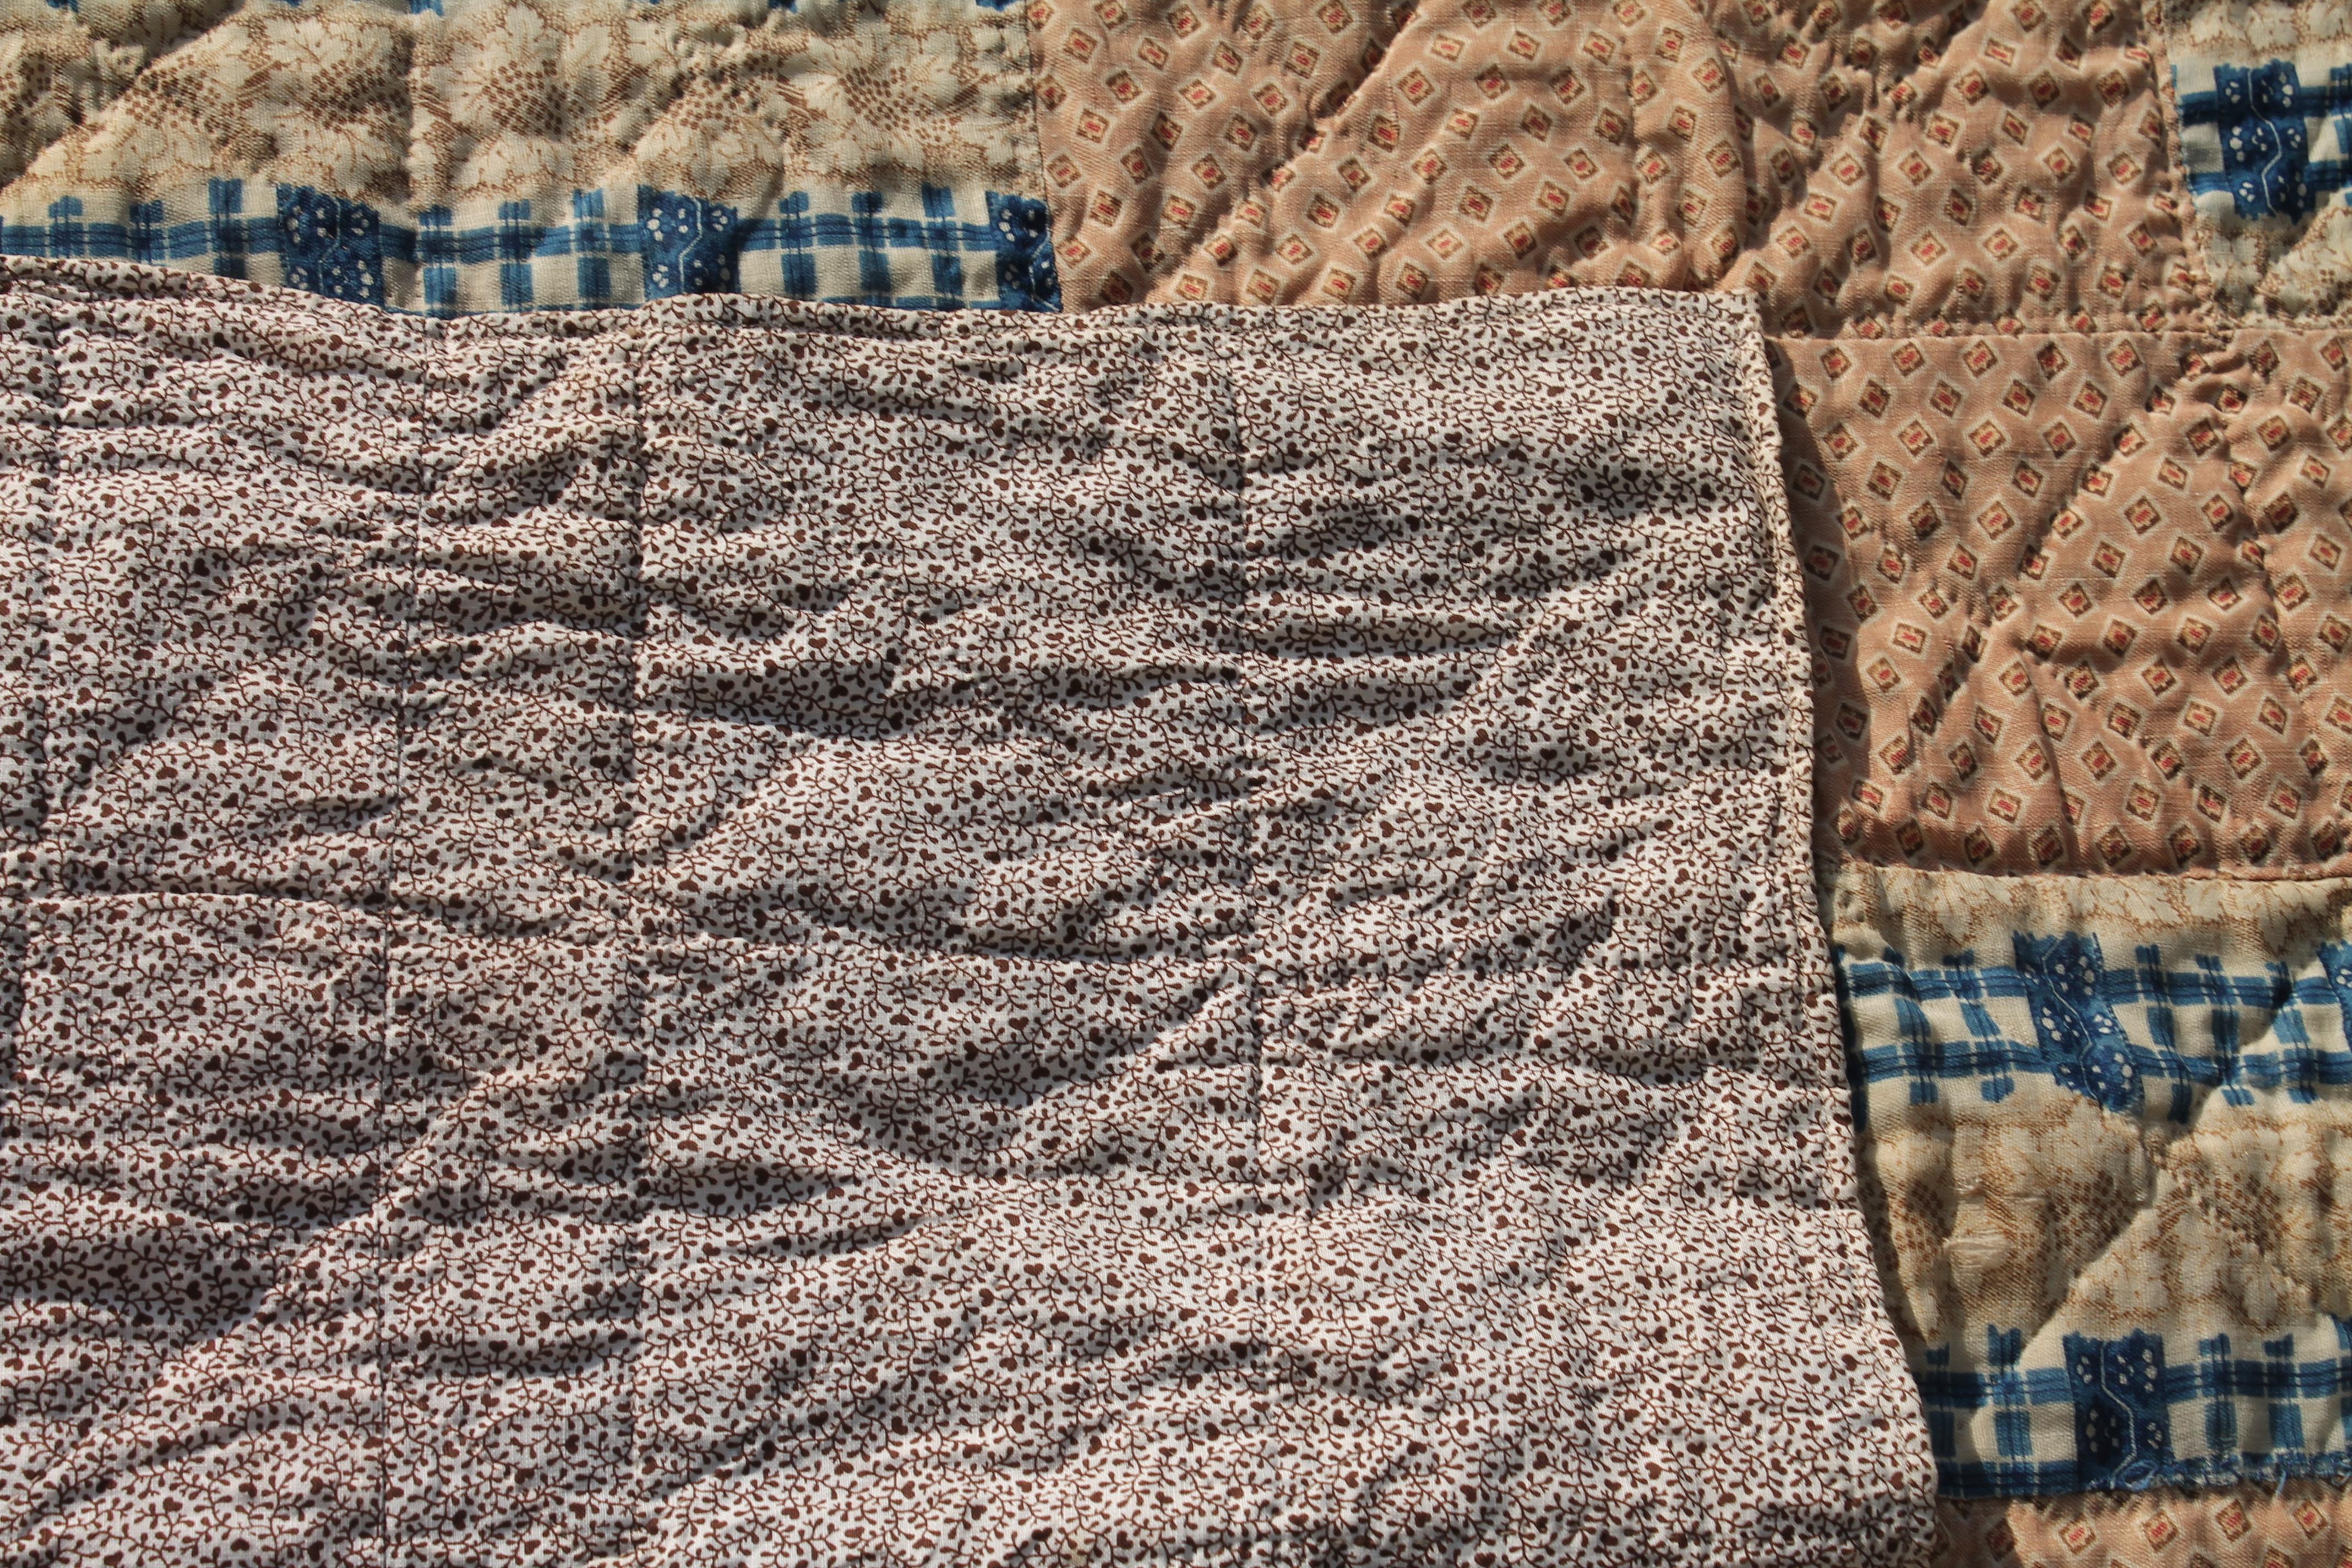 Dieser geometrische Quilt aus feiner Wolle und Baumwolle hat einen Stoff mit Walzenblockdruck. Die Rückseite ist aus einem bedruckten braunen Kattunstoff. Der Zustand ist sehr gut.